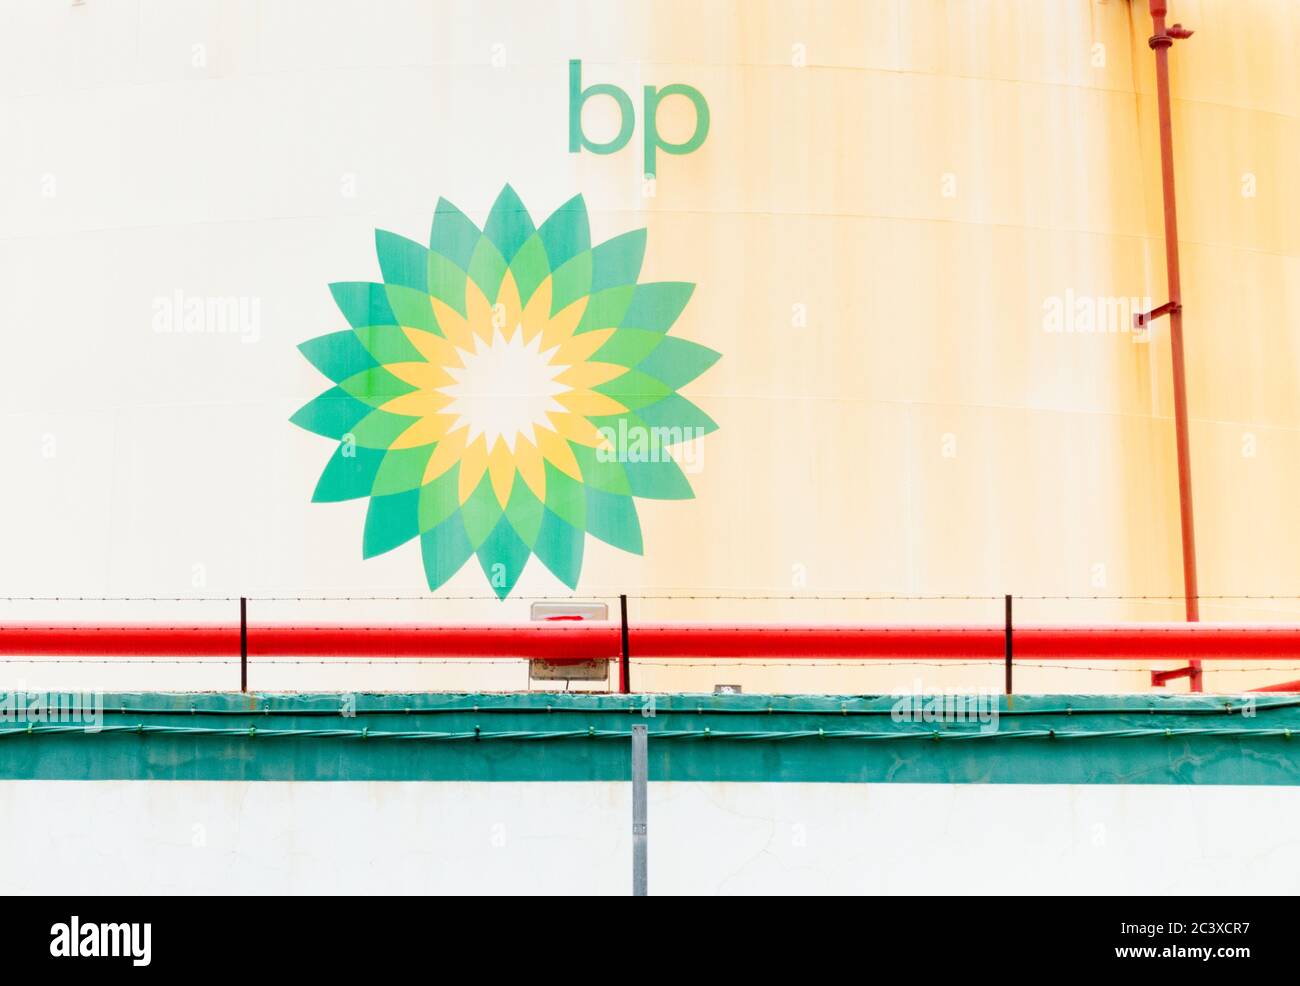 Serbatoi di stoccaggio carburante BP in raffineria Foto Stock